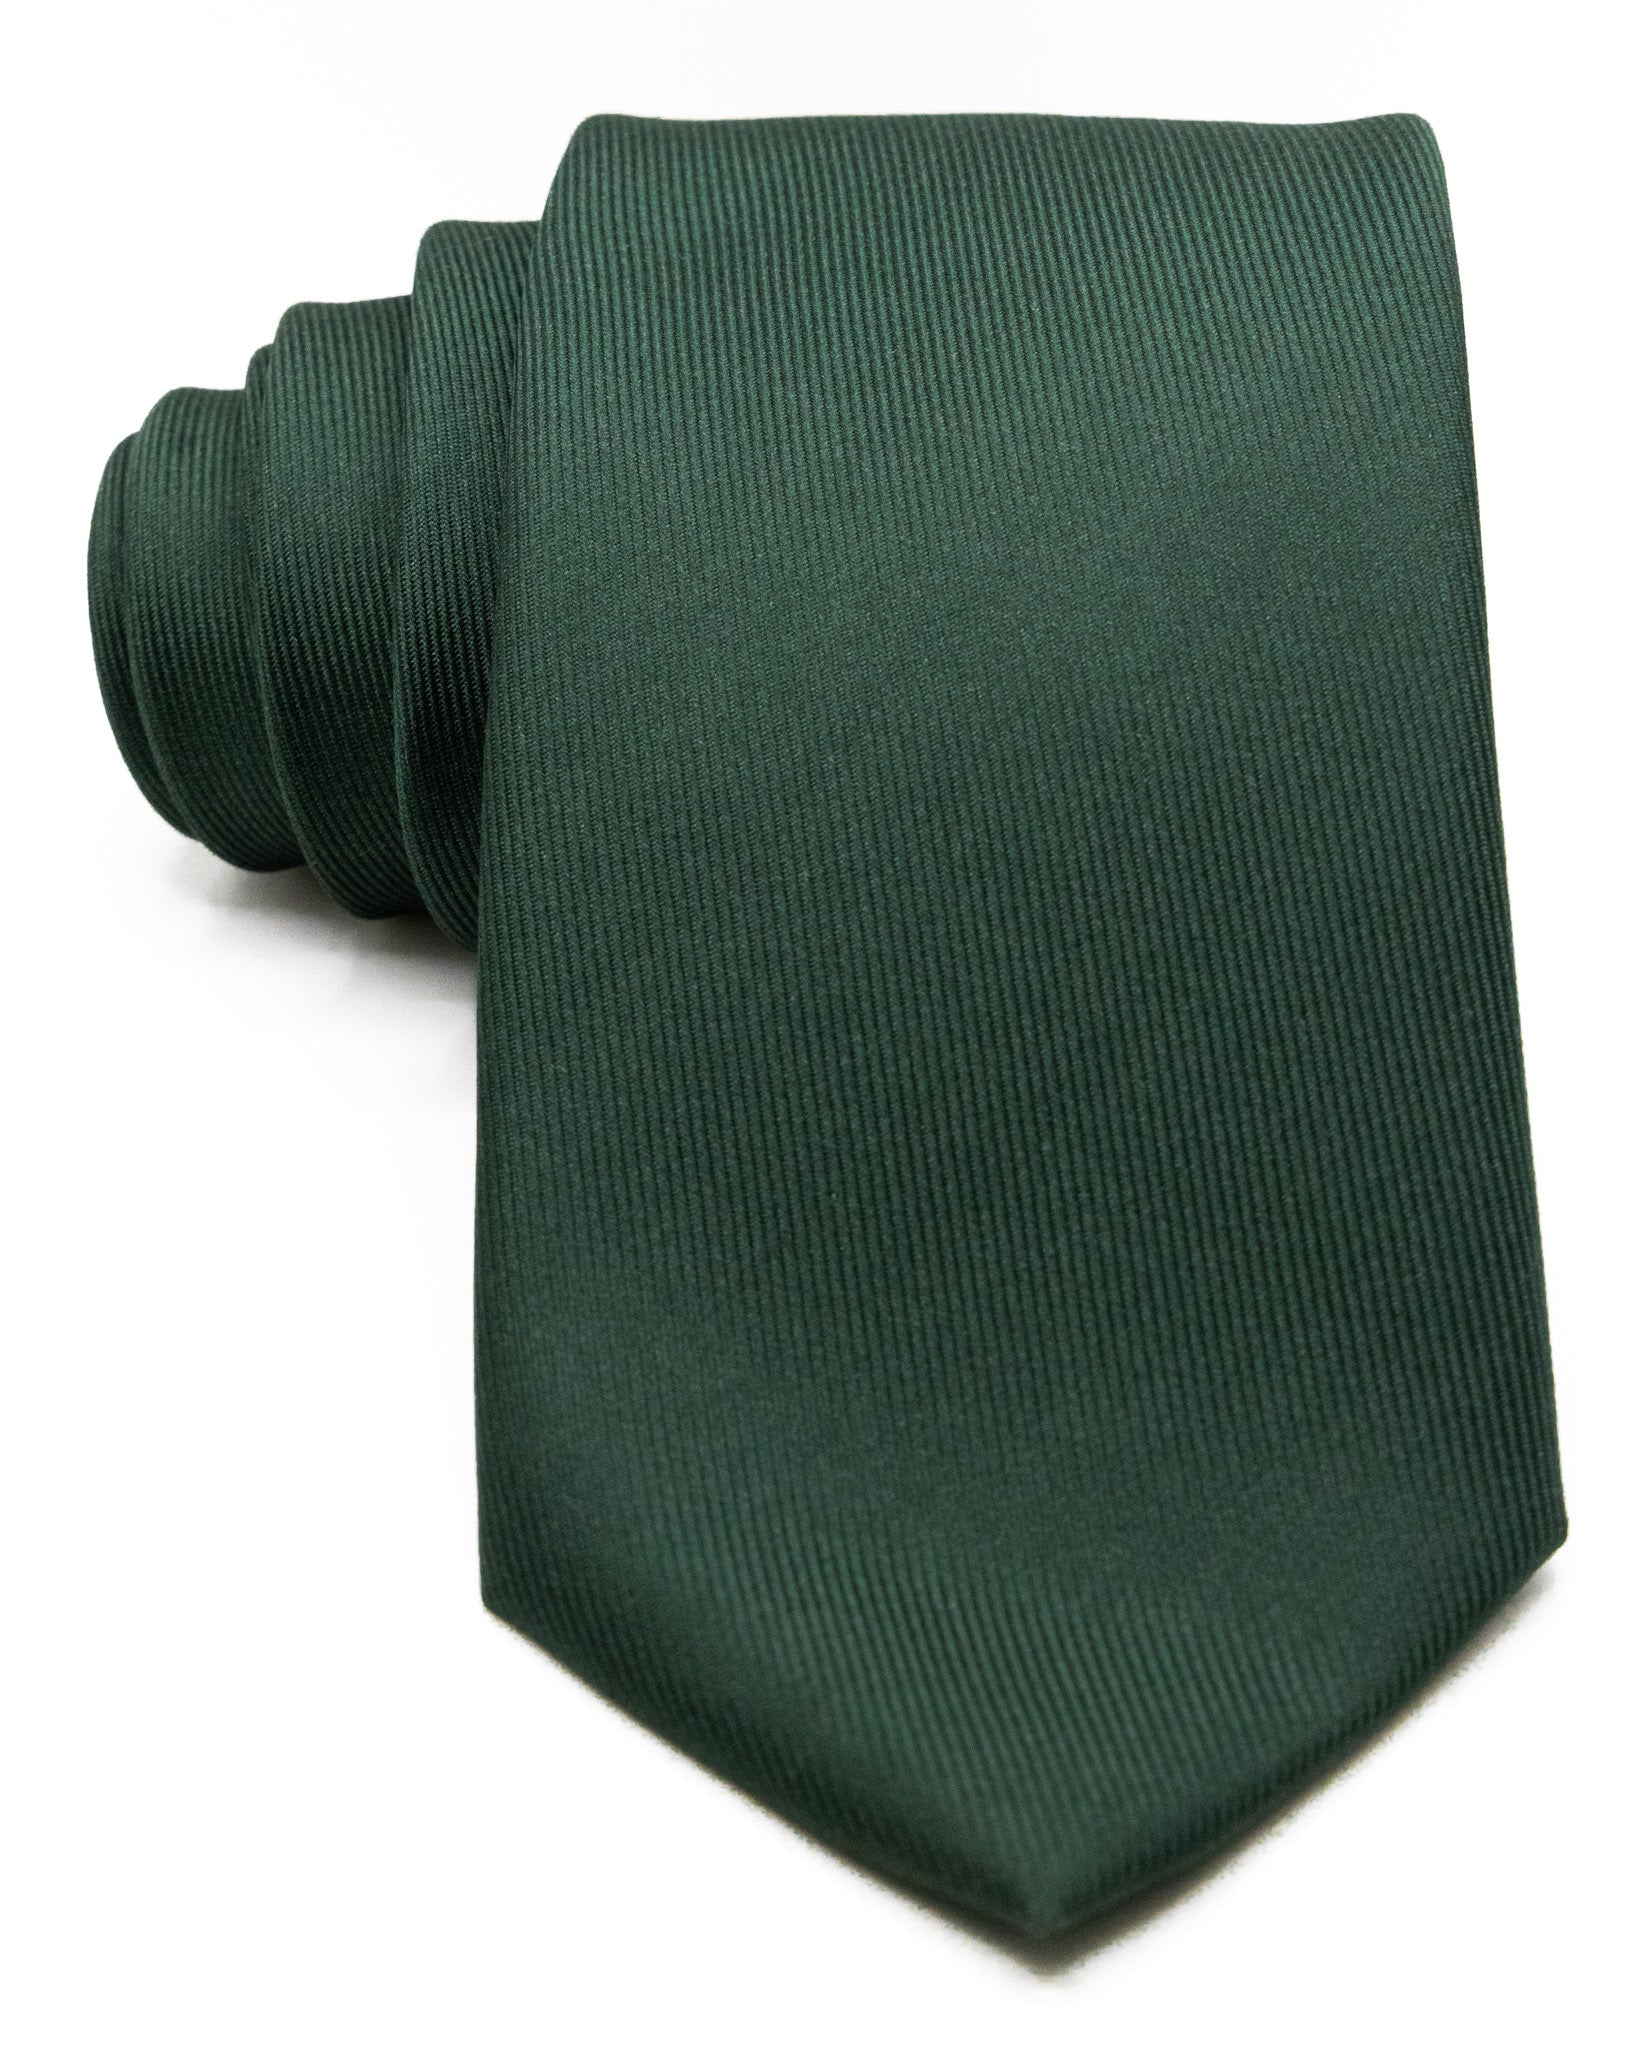 Cravatta - in seta twill militare